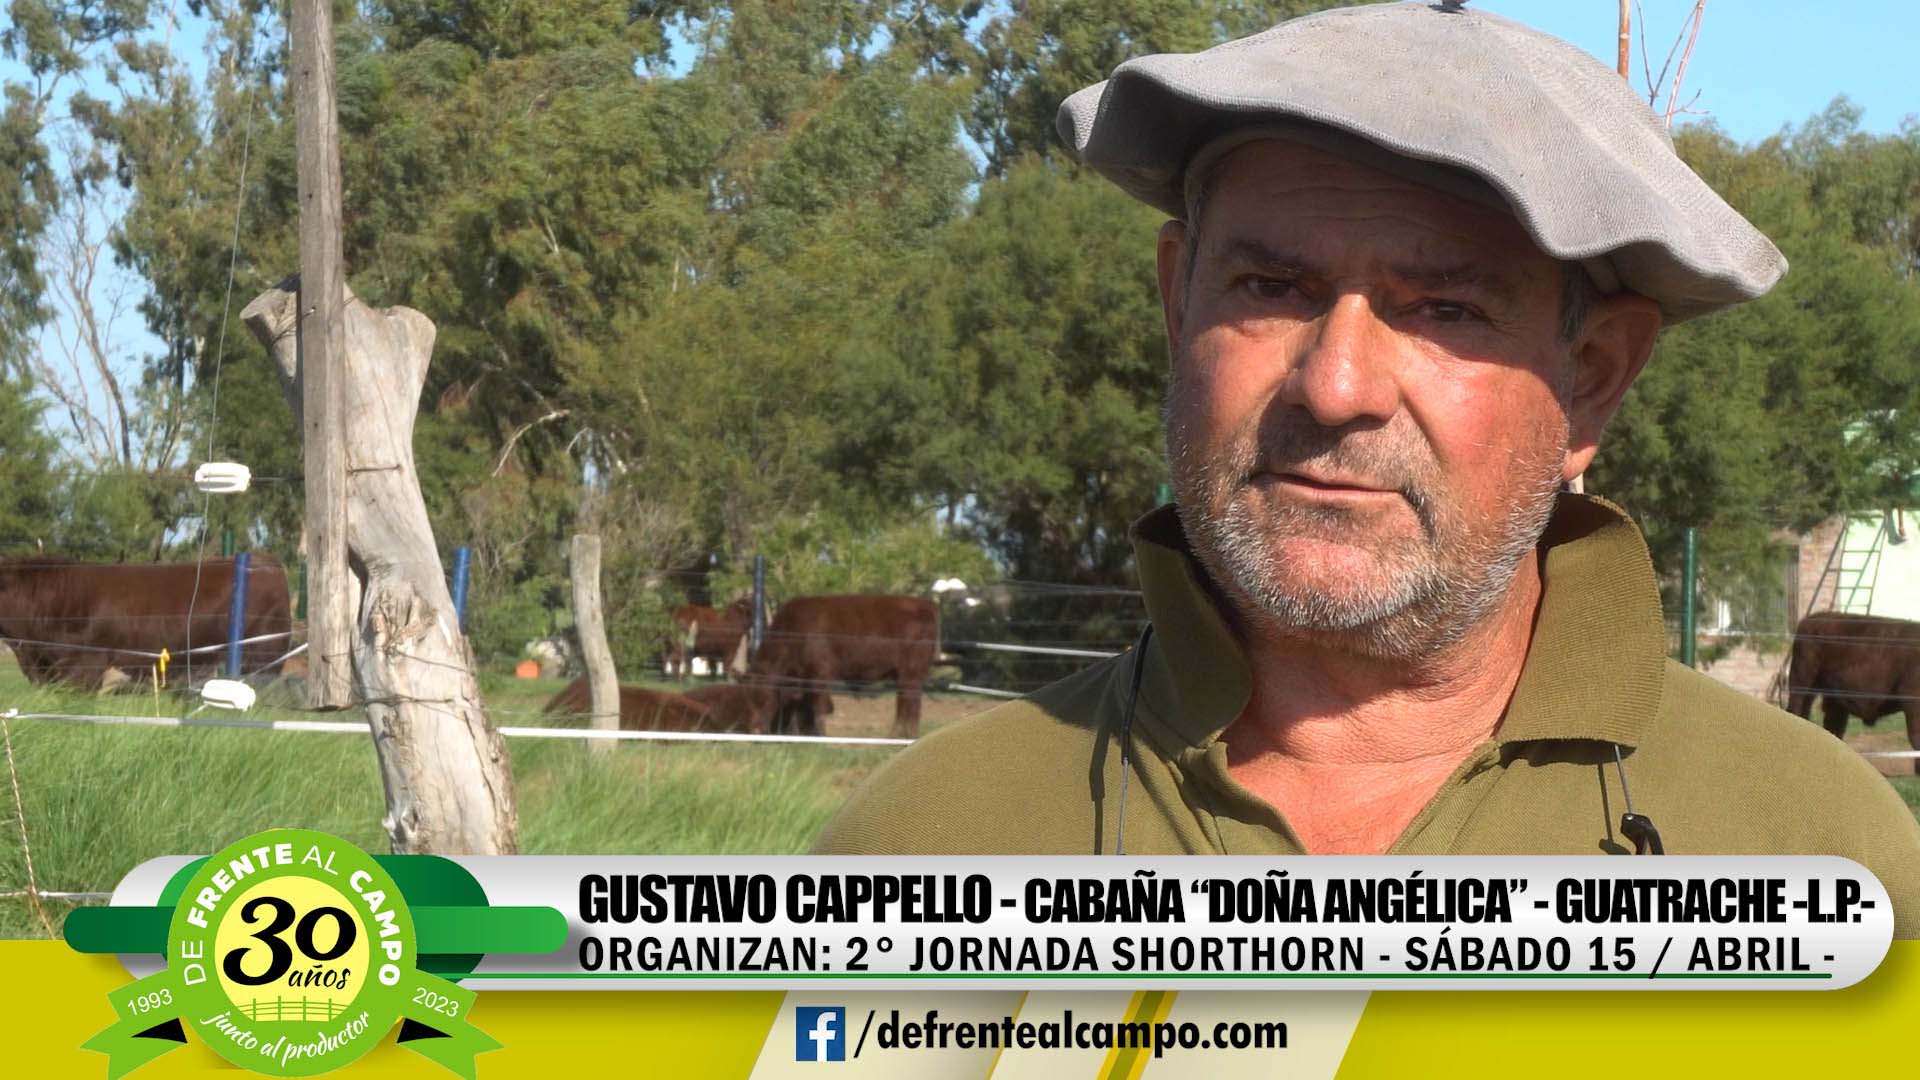 2° Jornada en Cabaña «Doña Angélica» – Gustavo Cappello –